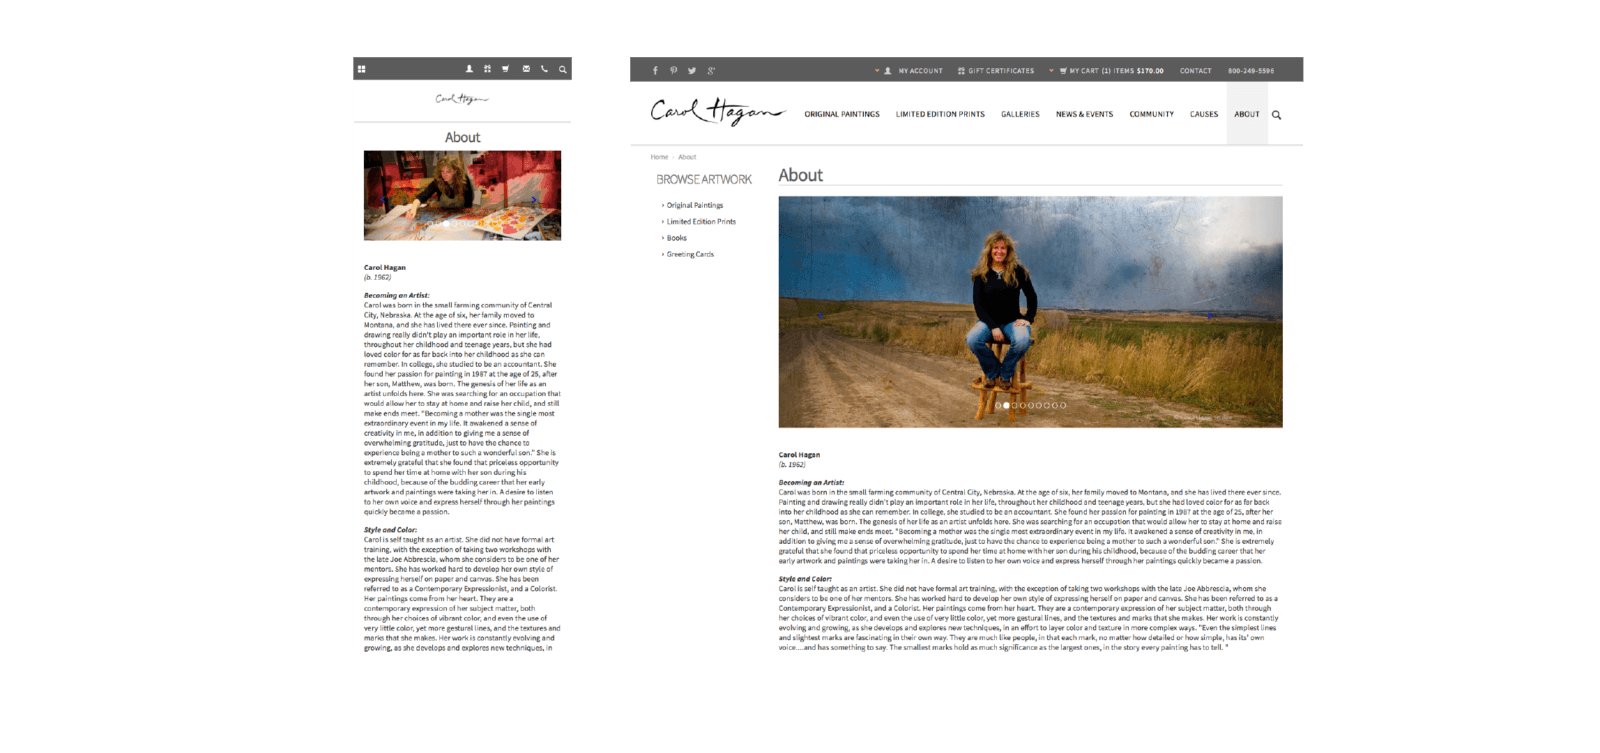 Carol Hagan website about page